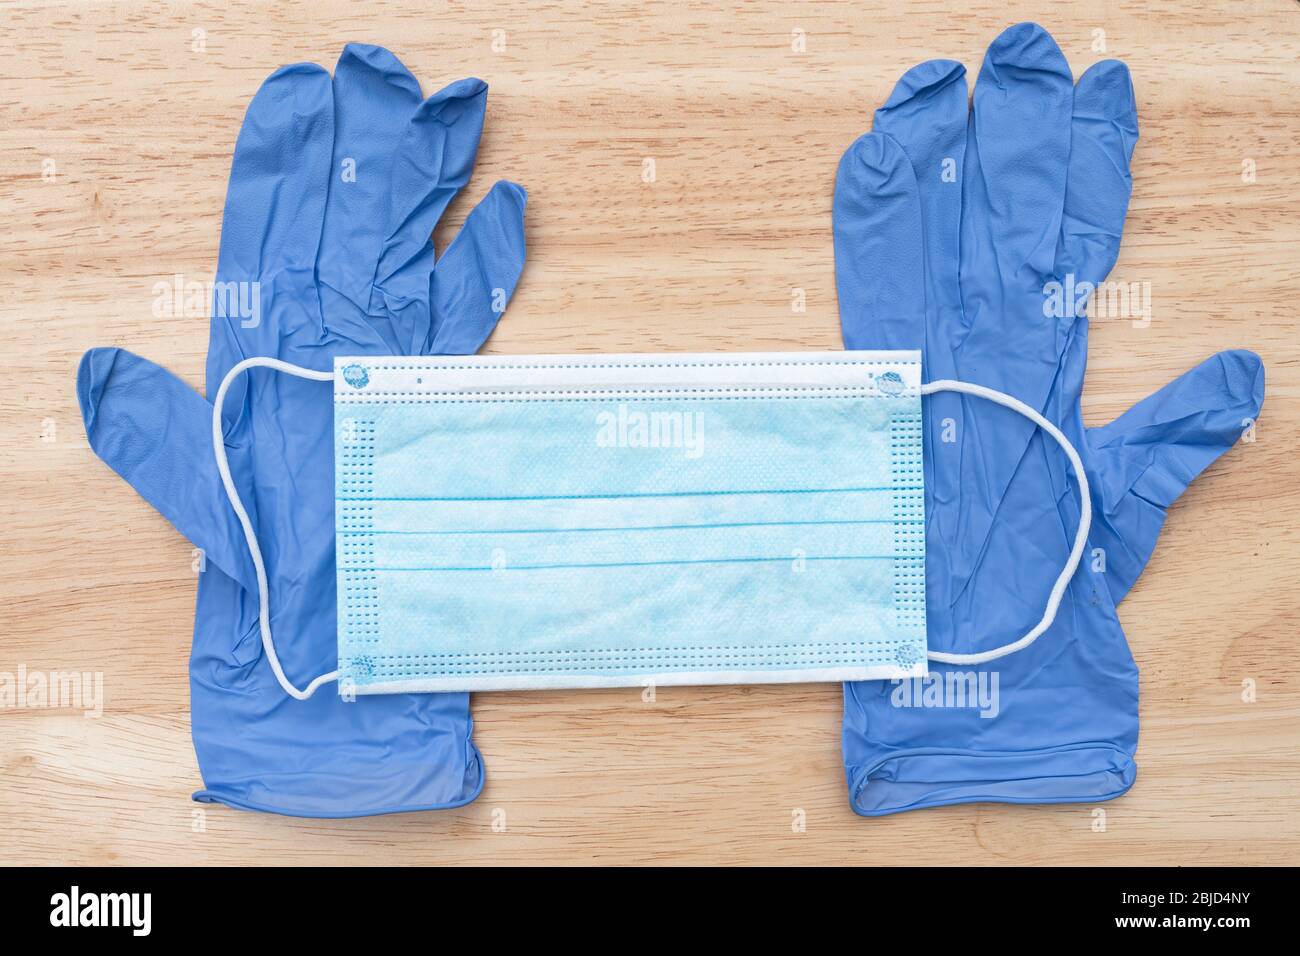 Equipo de protección personal (ppe), guantes desechables de nitrilo y mascarilla facial médica o clínica para uso durante la pandemia de covid-19 del coronavirus 2020 Foto de stock